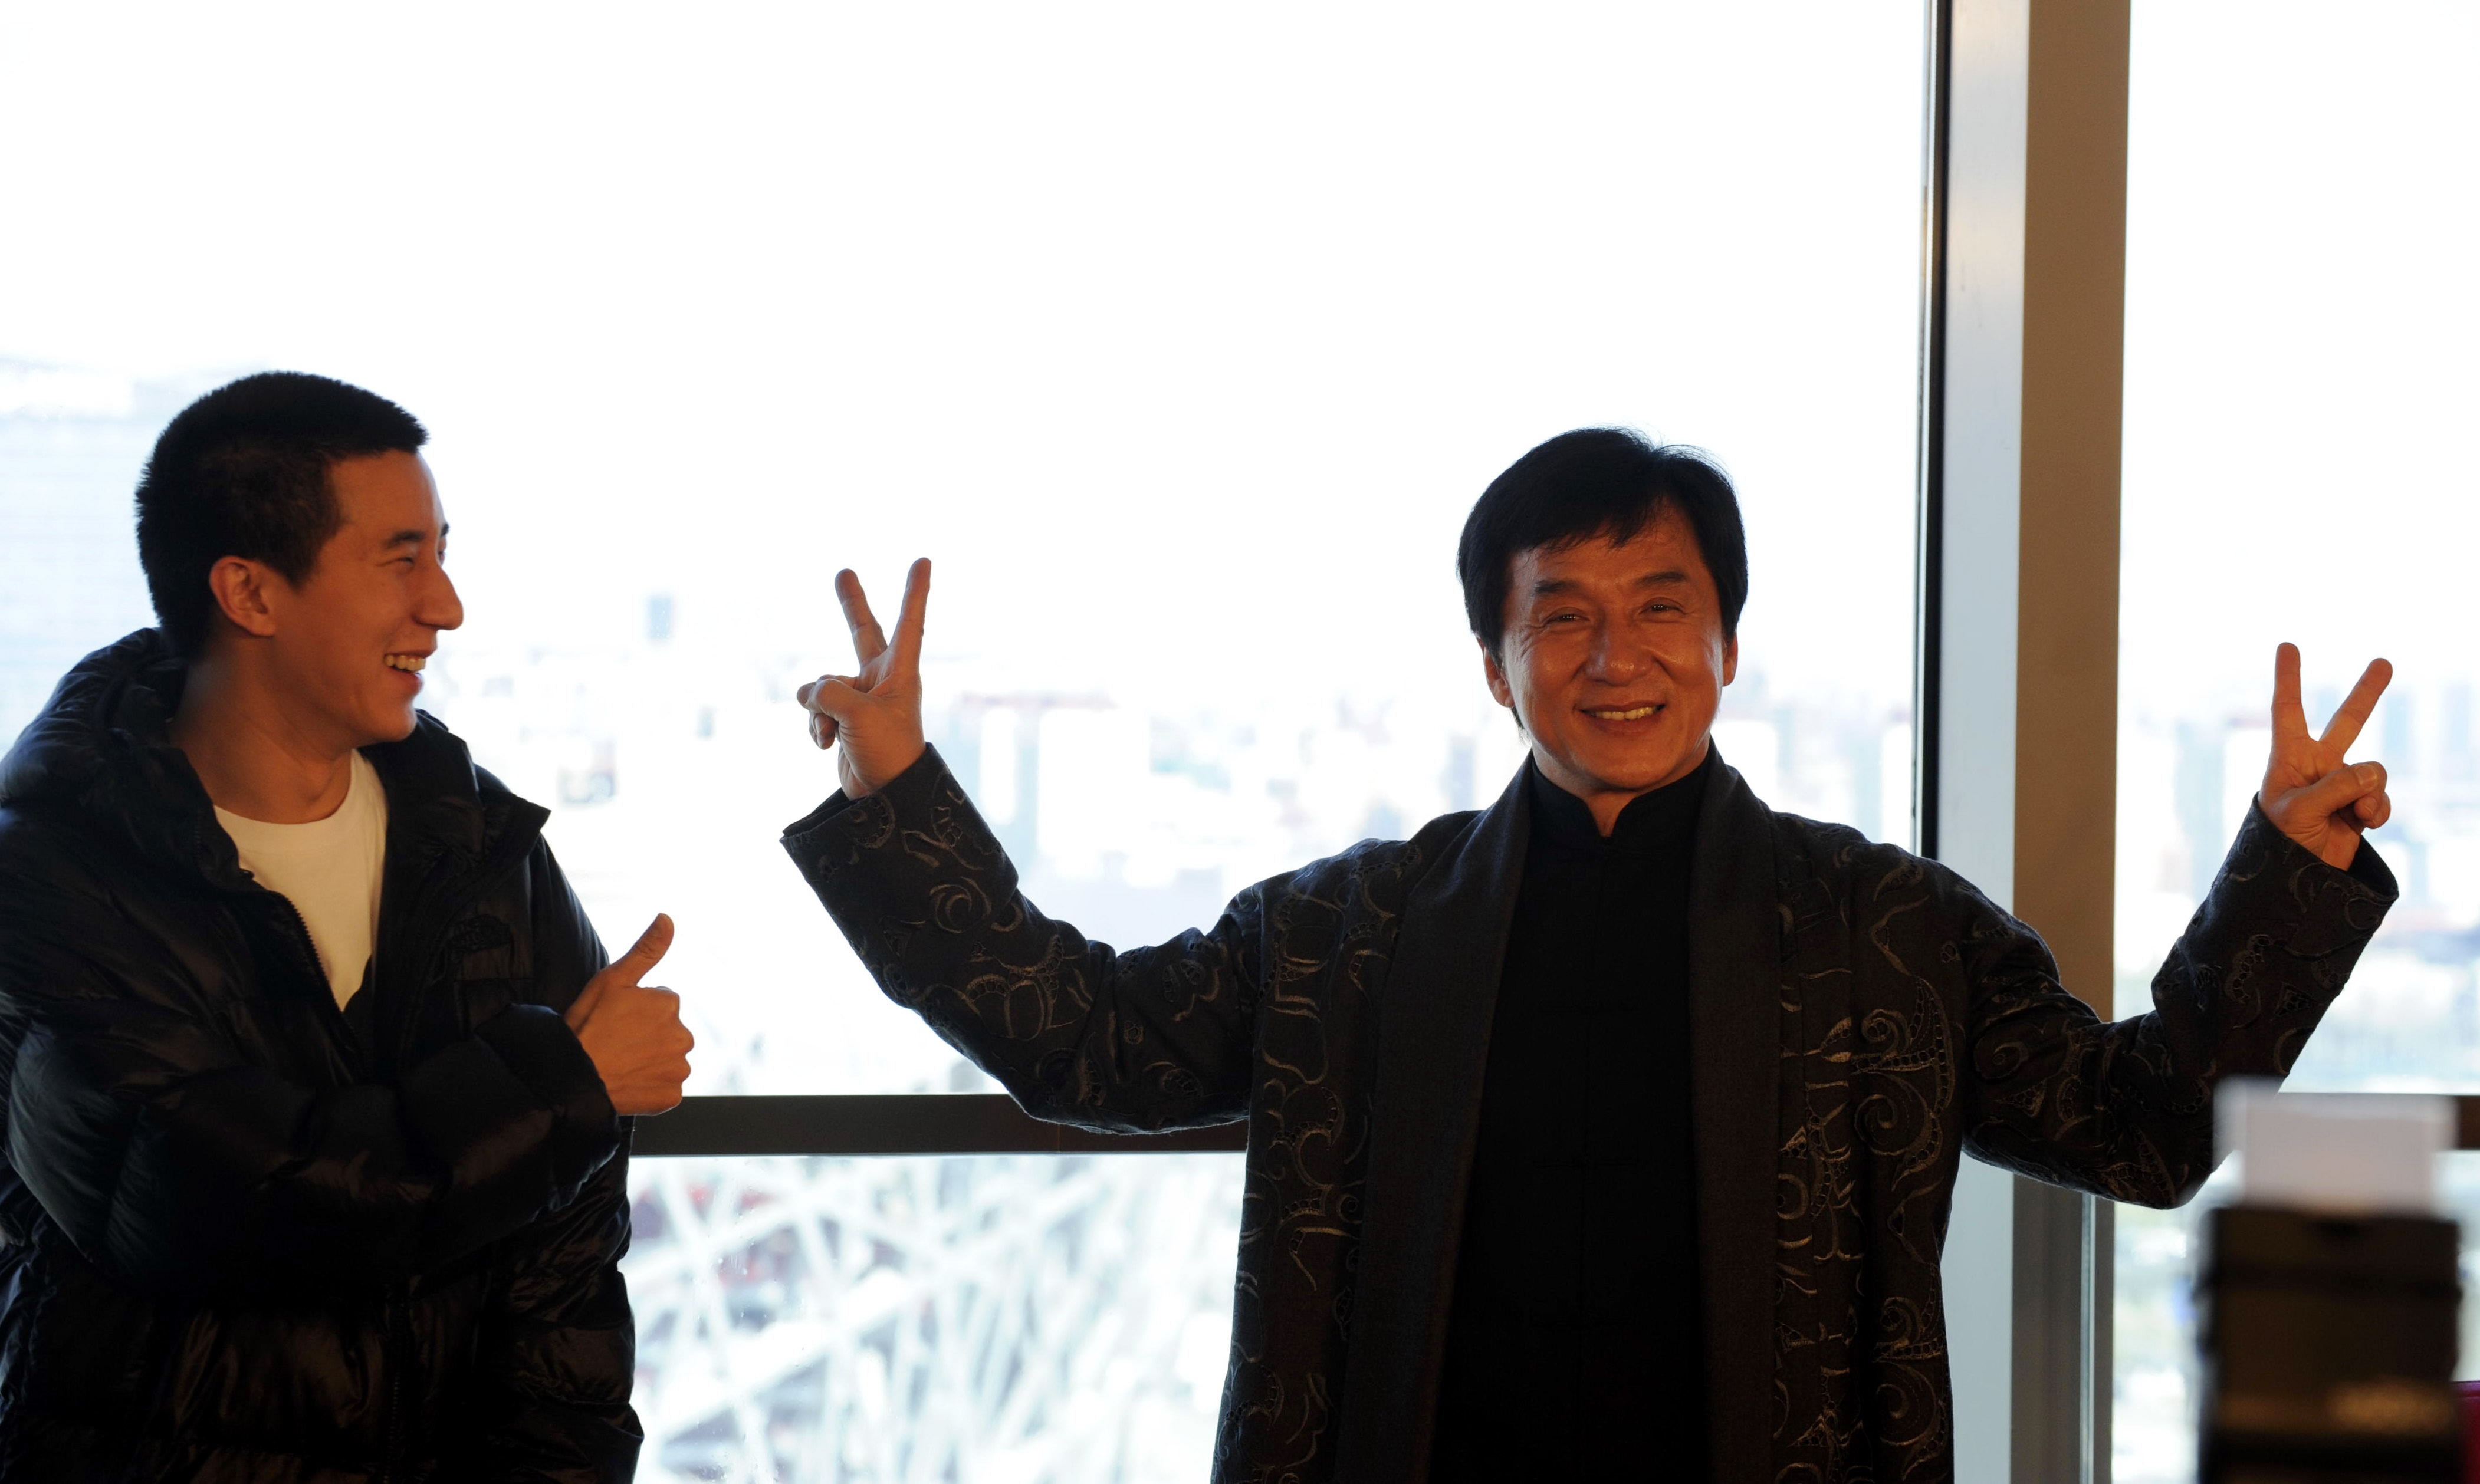 Jackie Chan et son fils Jaycee Chan assistent à une conférence de presse annonçant un concert au Bird's Nest Stadium le 1er avril 2009 à Pékin, Chine. | Source : Getty Images